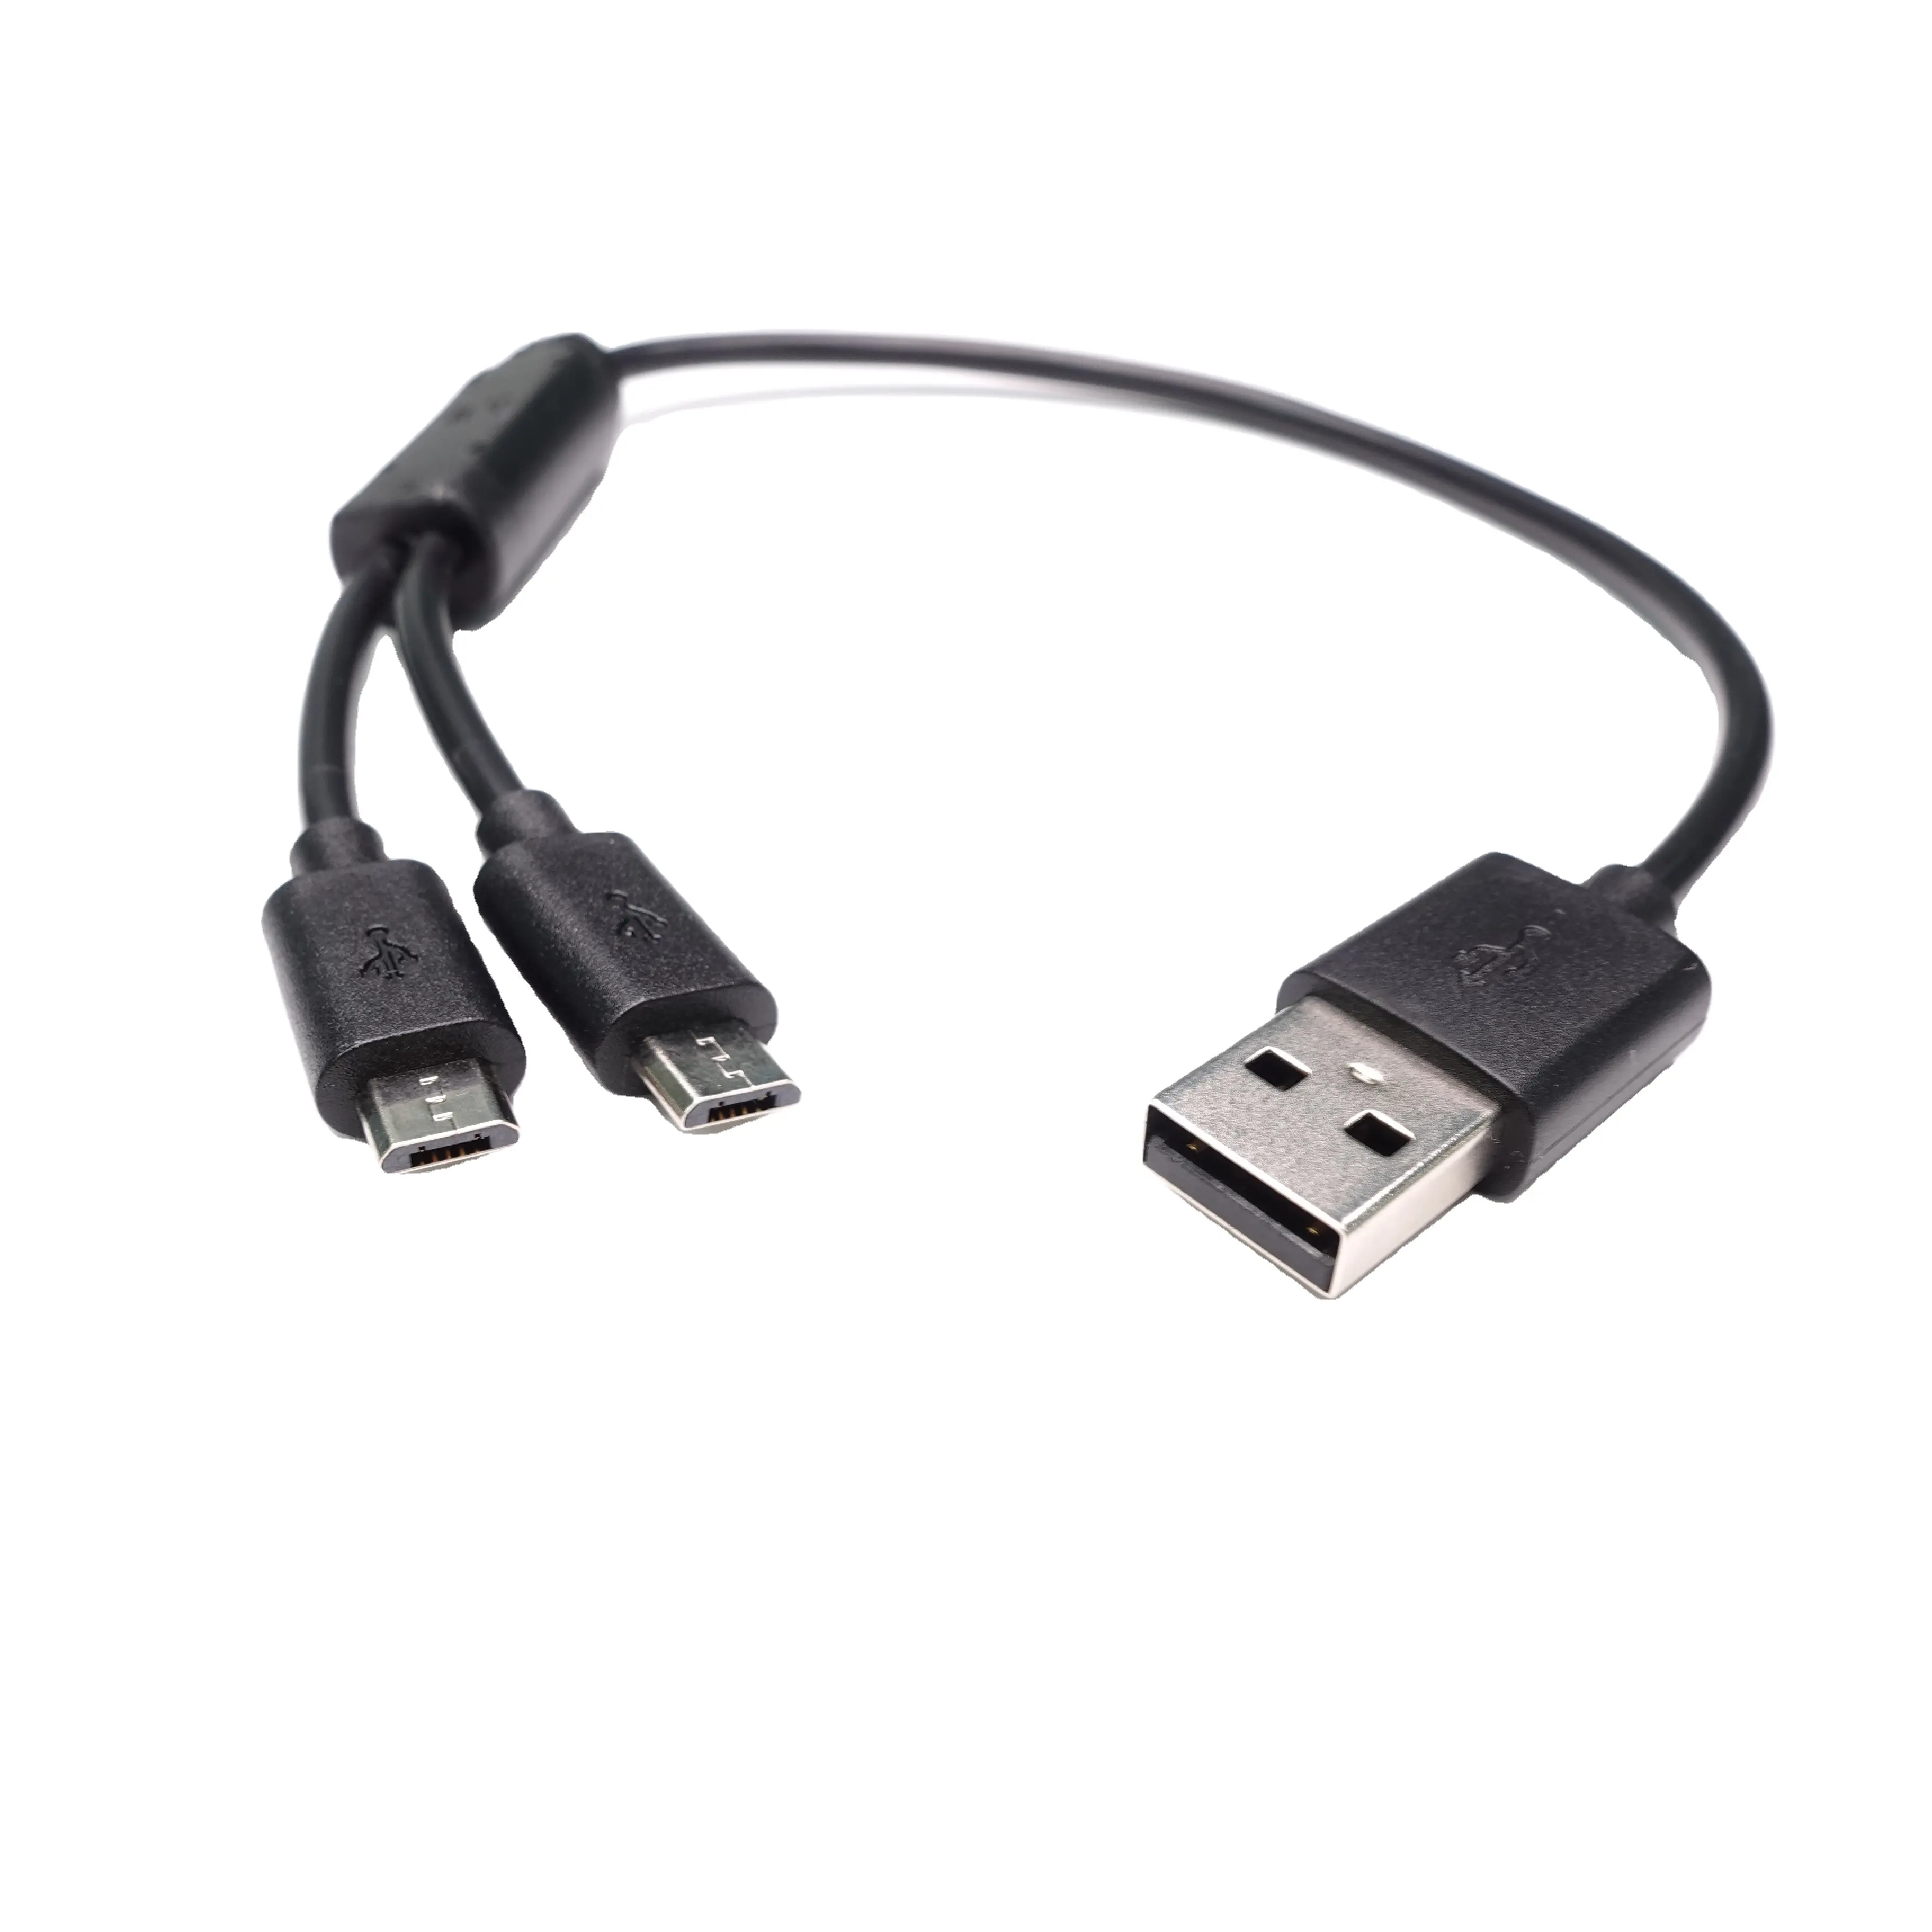 Cable DE DATOS micro USB de 2 pines para datos de Android que cambian los productos electrónicos de consumo